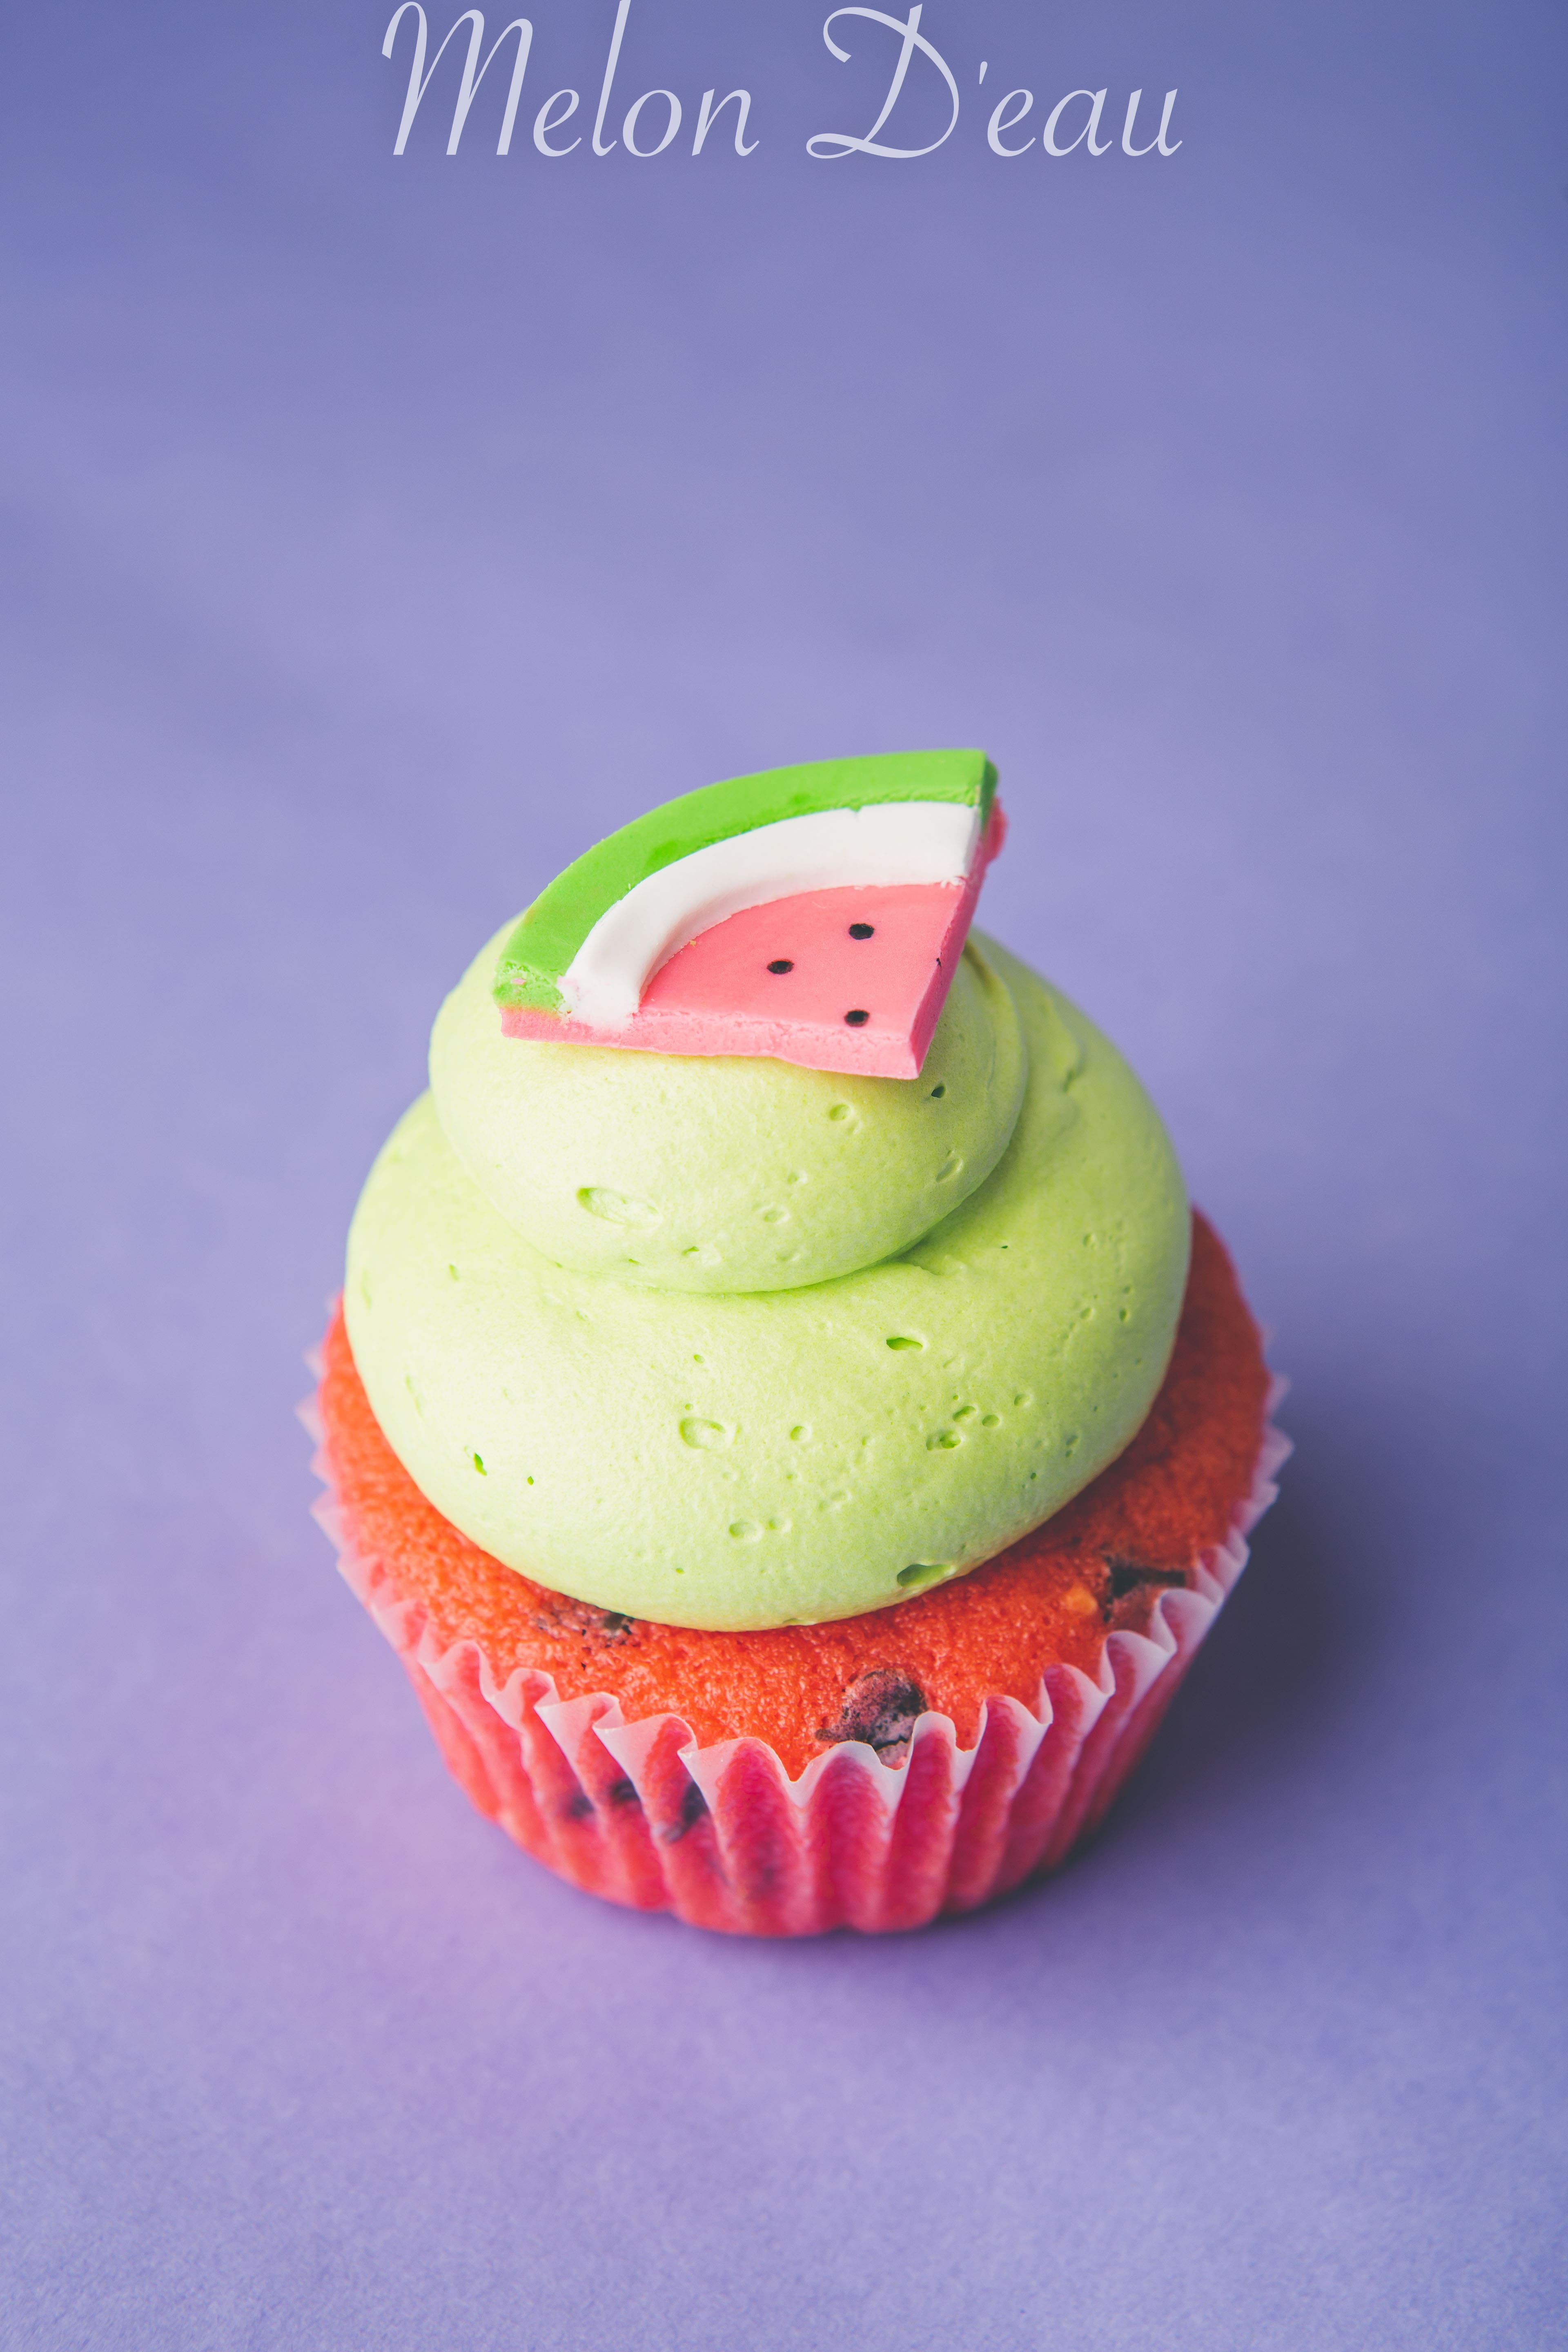 Cupcakes - Melon D'eau